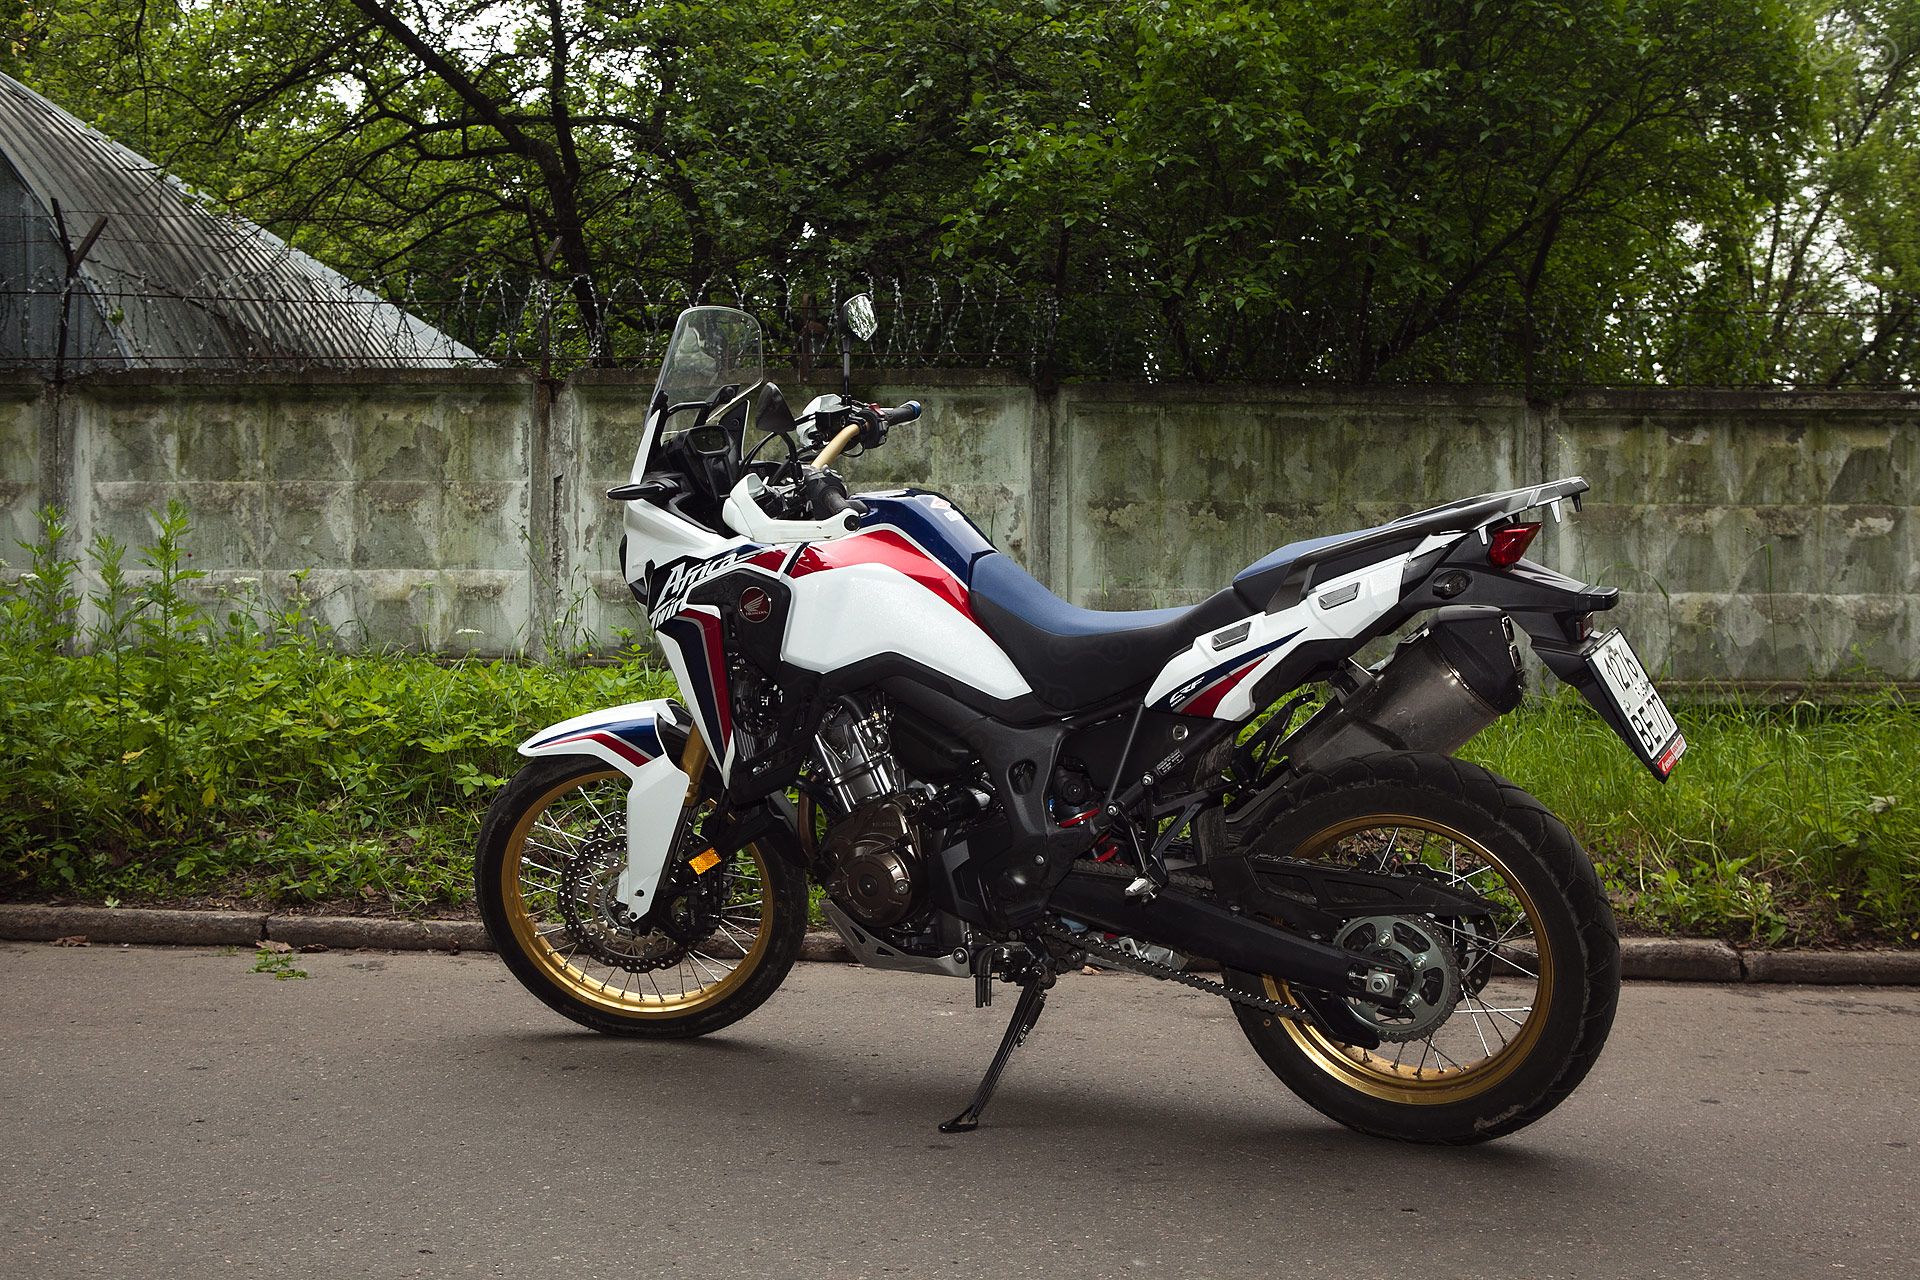 Подвеска мотоцикла Honda CRF1000L Africa Twin регулируется по старинке - вручную. 